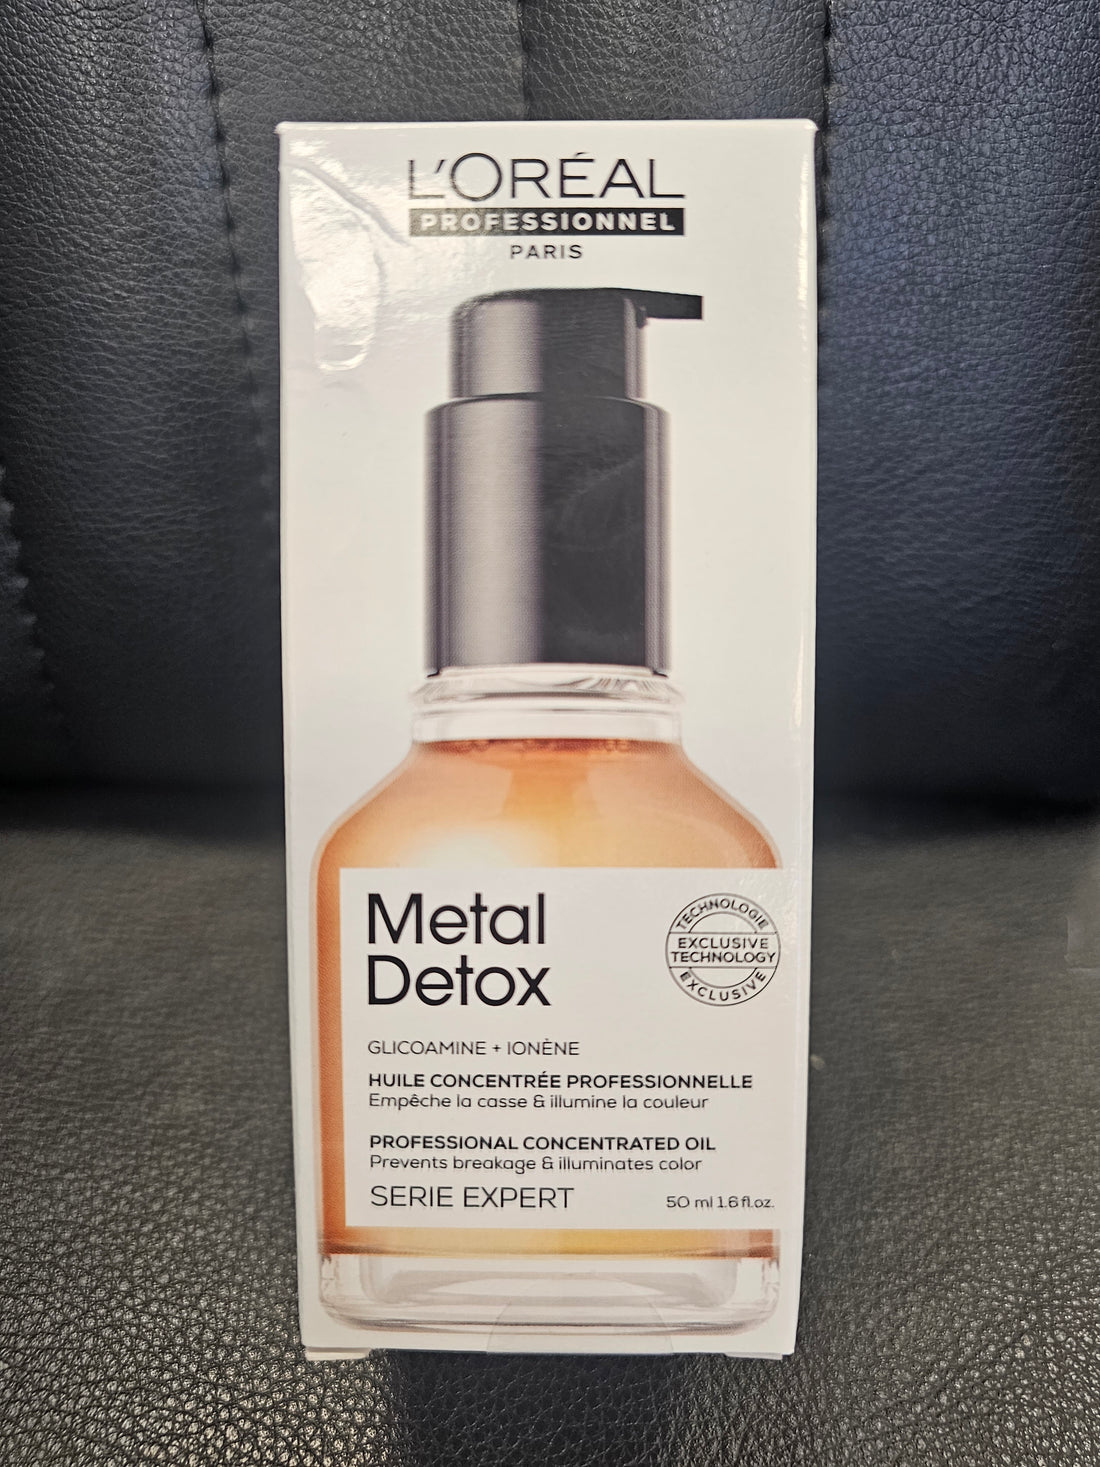 L'oreal Metal Detox Oil